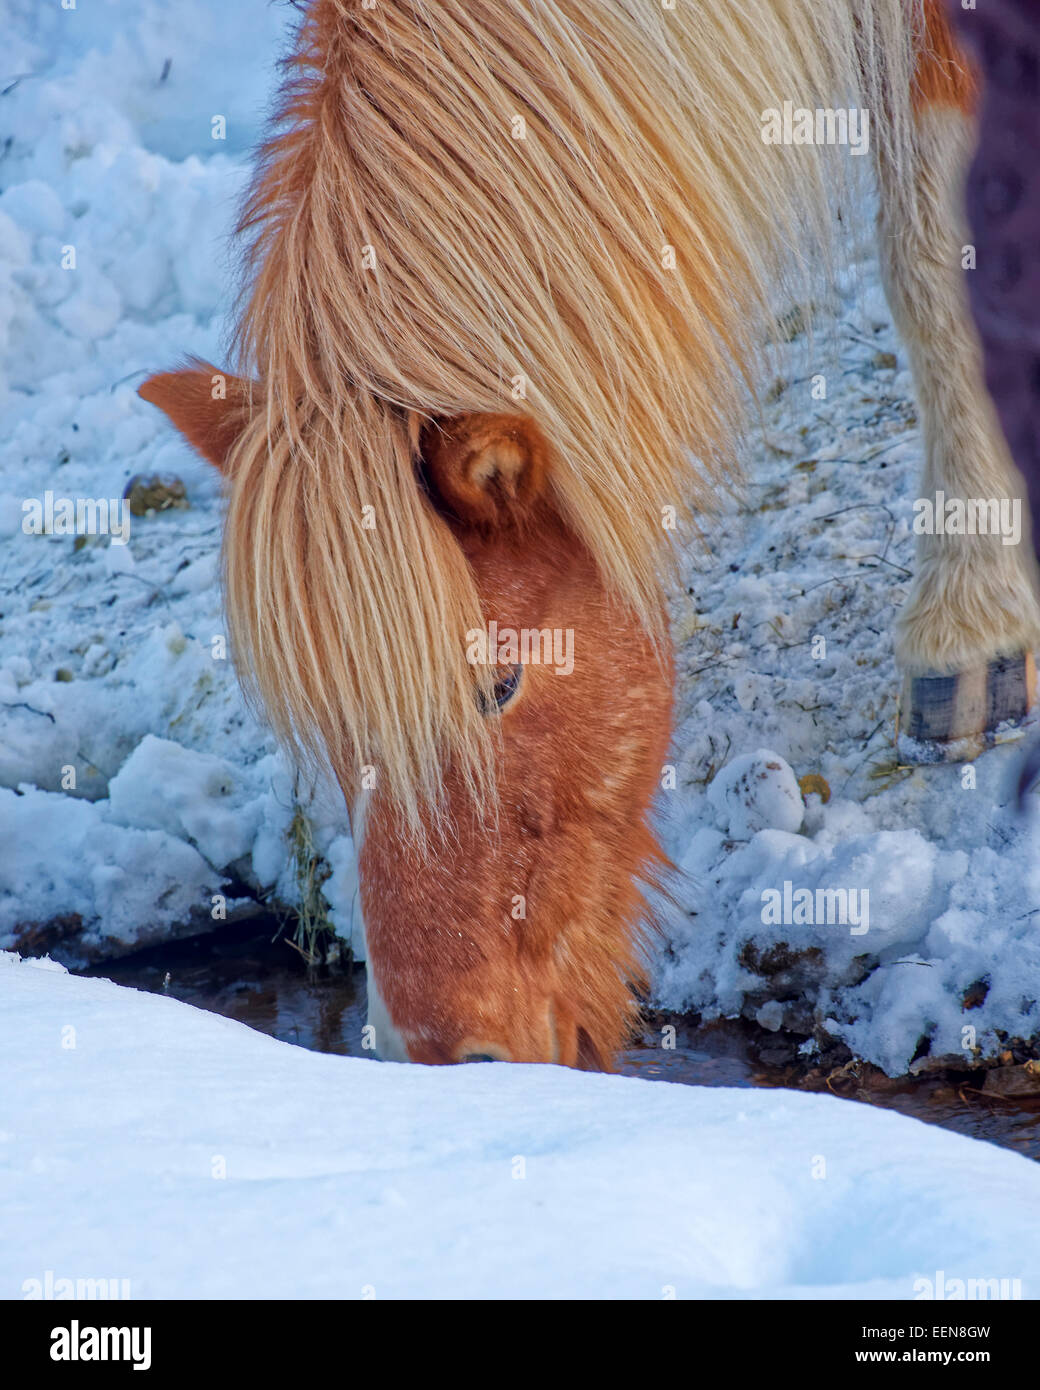 Cheval islandais est une race chevaline développée en Islande. Les chevaux sont petits, parfois de taille poney. Banque D'Images